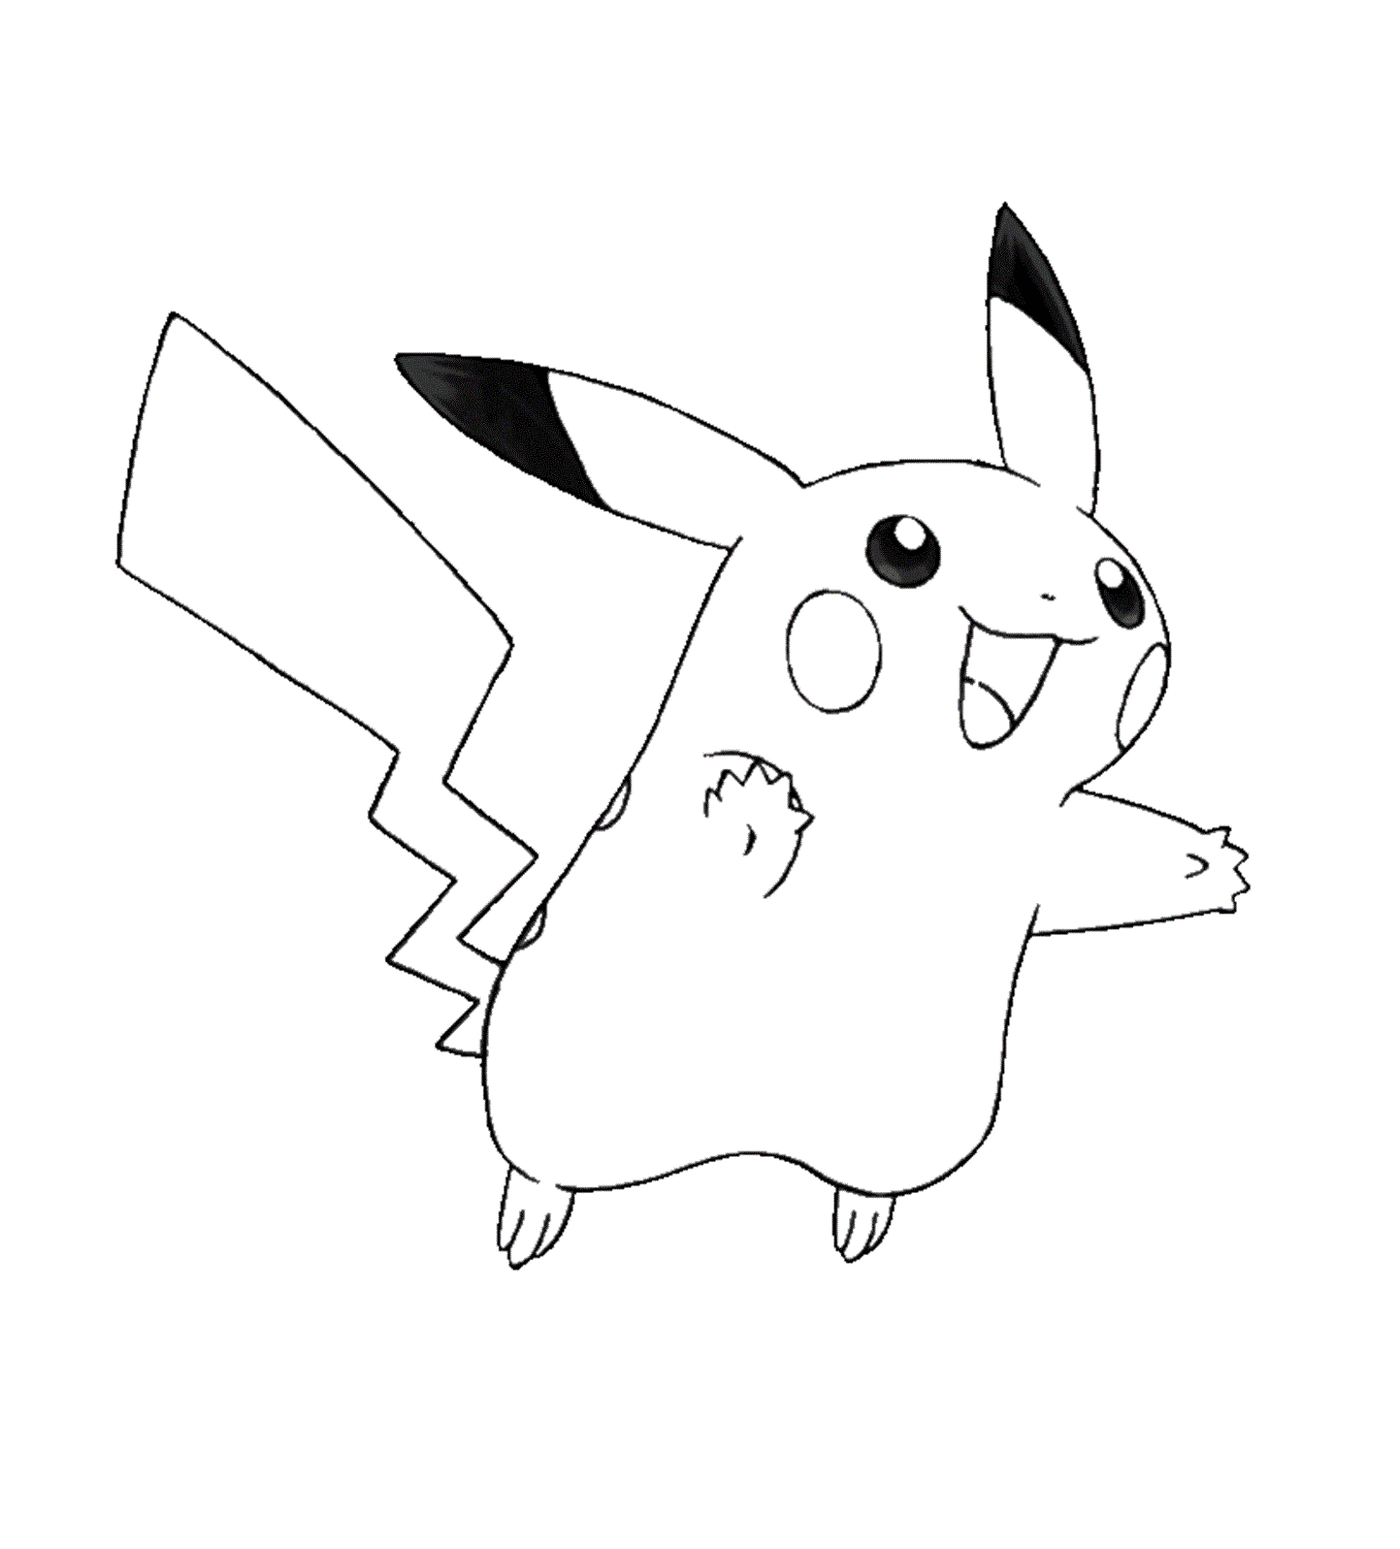  Pikachu mit einem ruhigen Ausdruck 